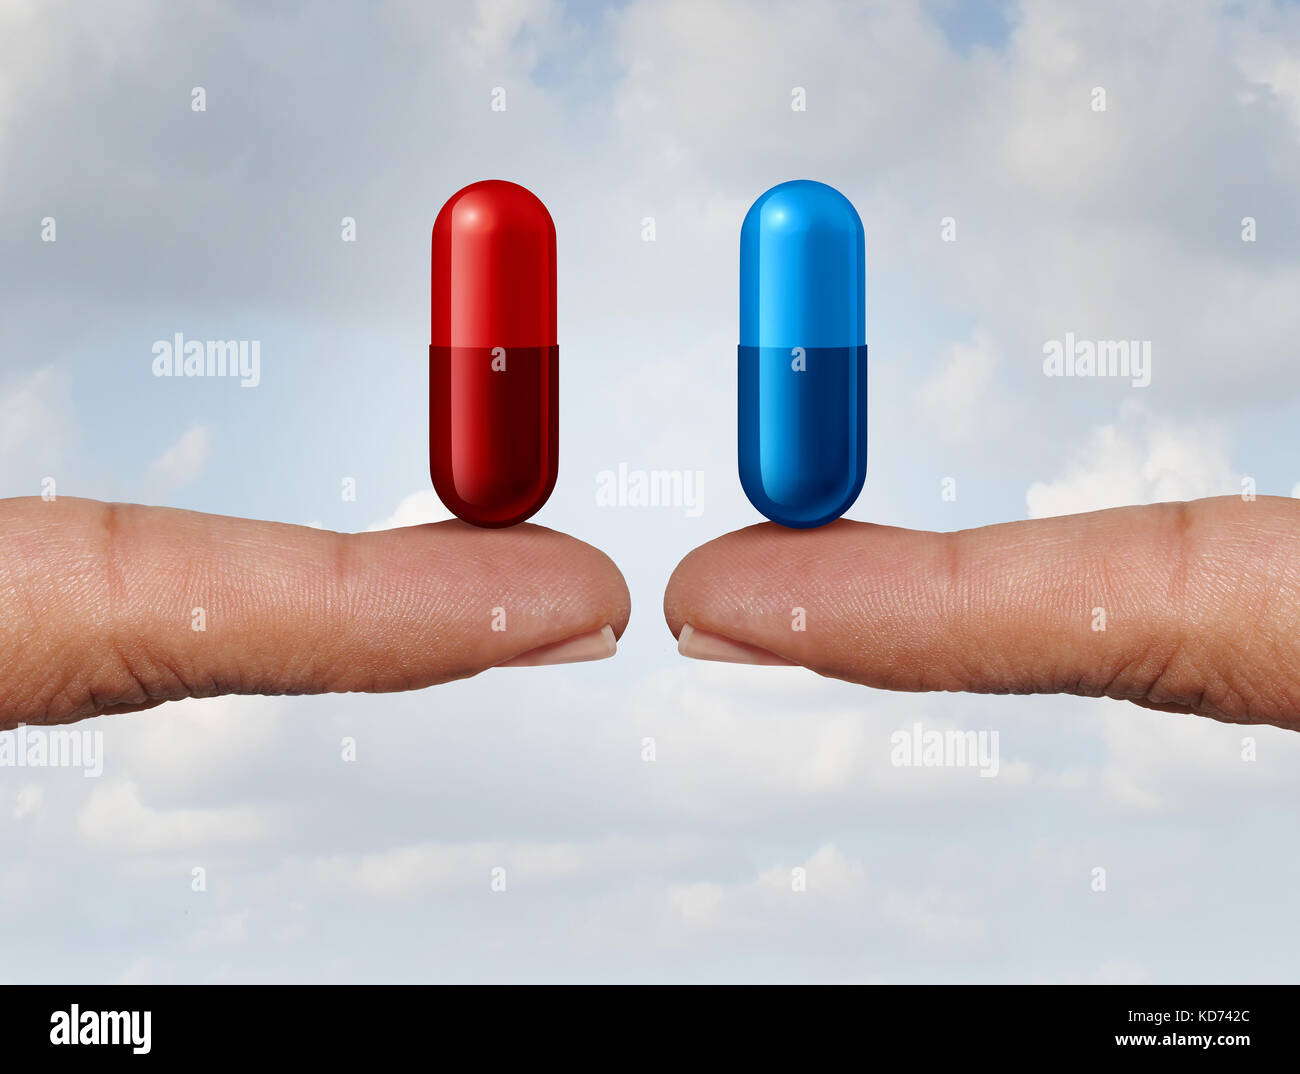 Pilule rouge et bleu comme médicament de choix doigts tenant gélules comme symbole de choisir entre la vérité et l'illusion ou la connaissance ou l'ignorance. Banque D'Images